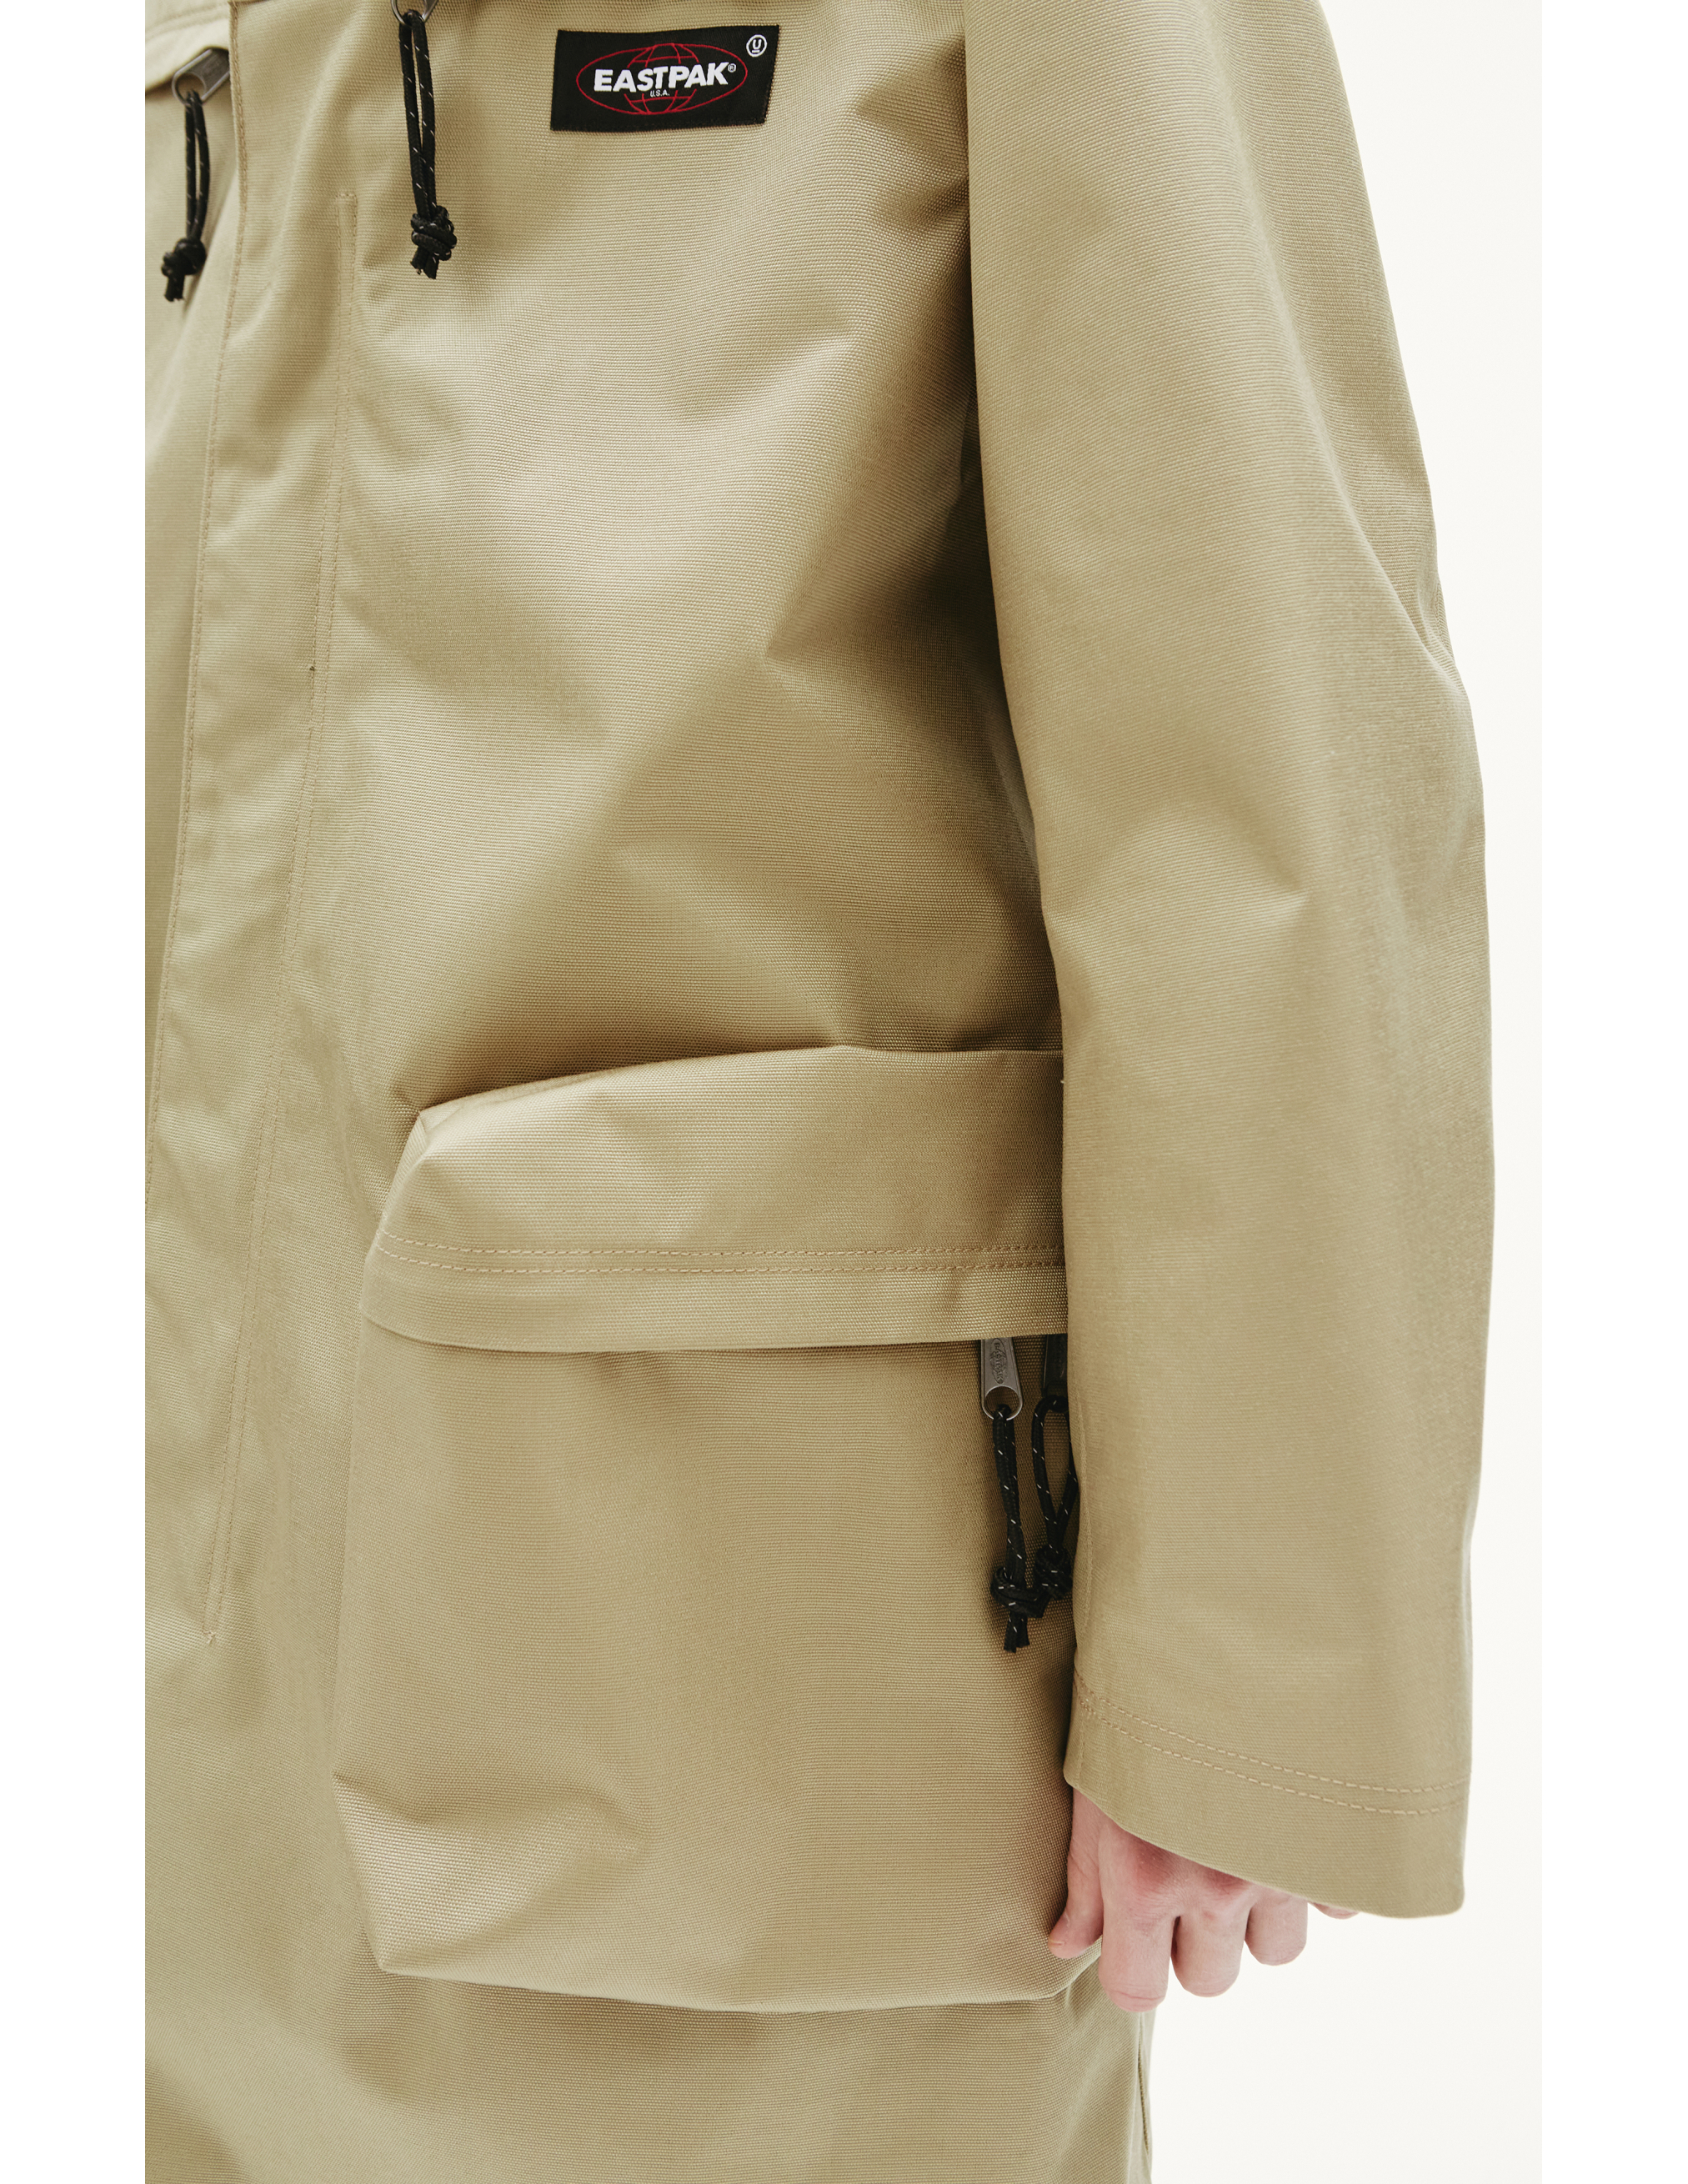 Плащ Undercover x Eastpak с накладными карманами - Undercover UC2A4309/beige Фото 6